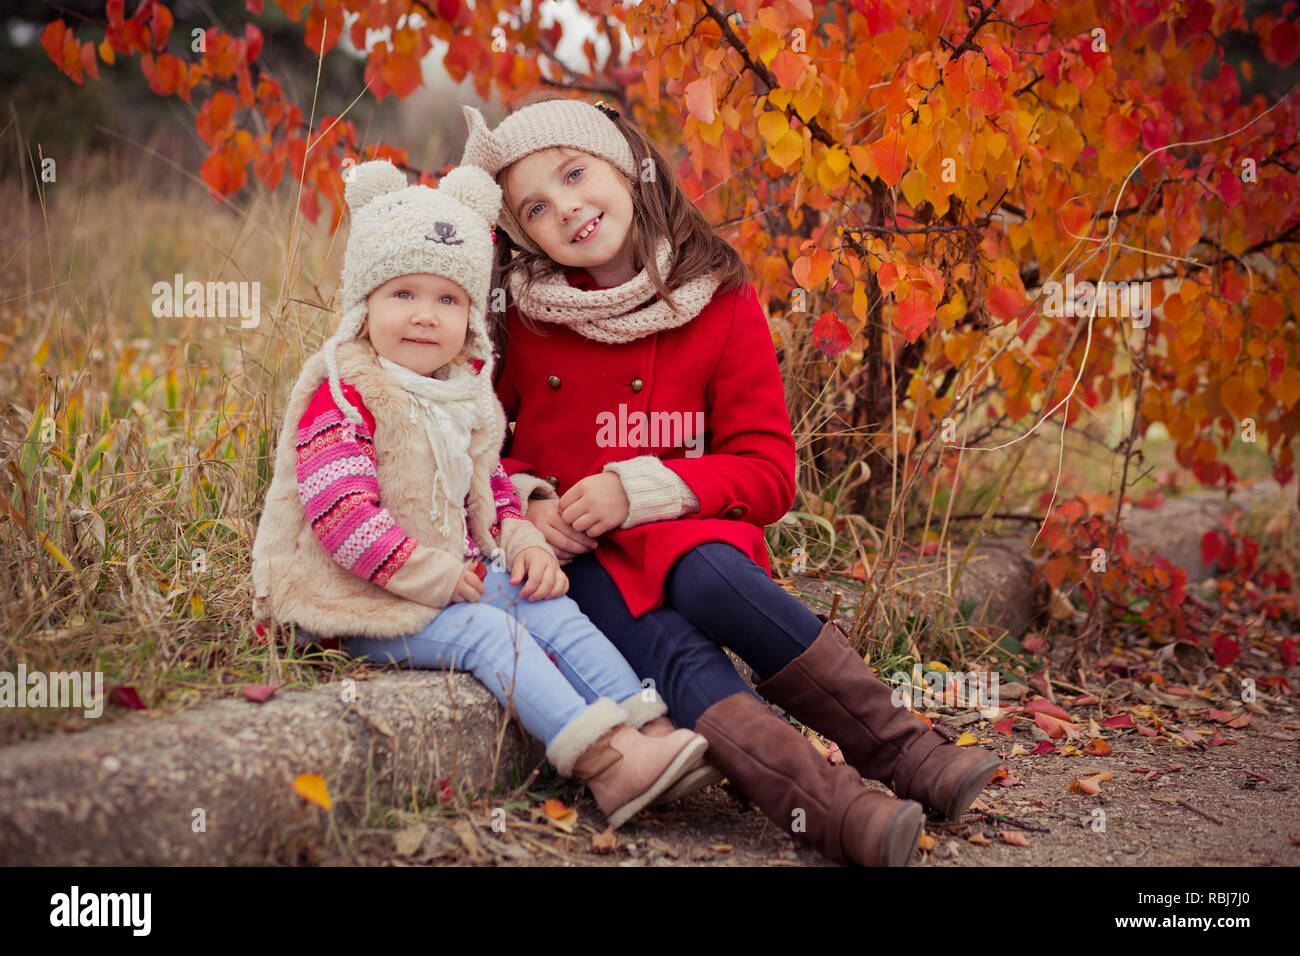 Mode Baby Mädchen Schwestern stilvoll gekleidet brunnette und blond tragen  warme Herbst Kleidung Jacken zusammen Posieren gerne in bunten Wald Laub. F  Stockfotografie - Alamy